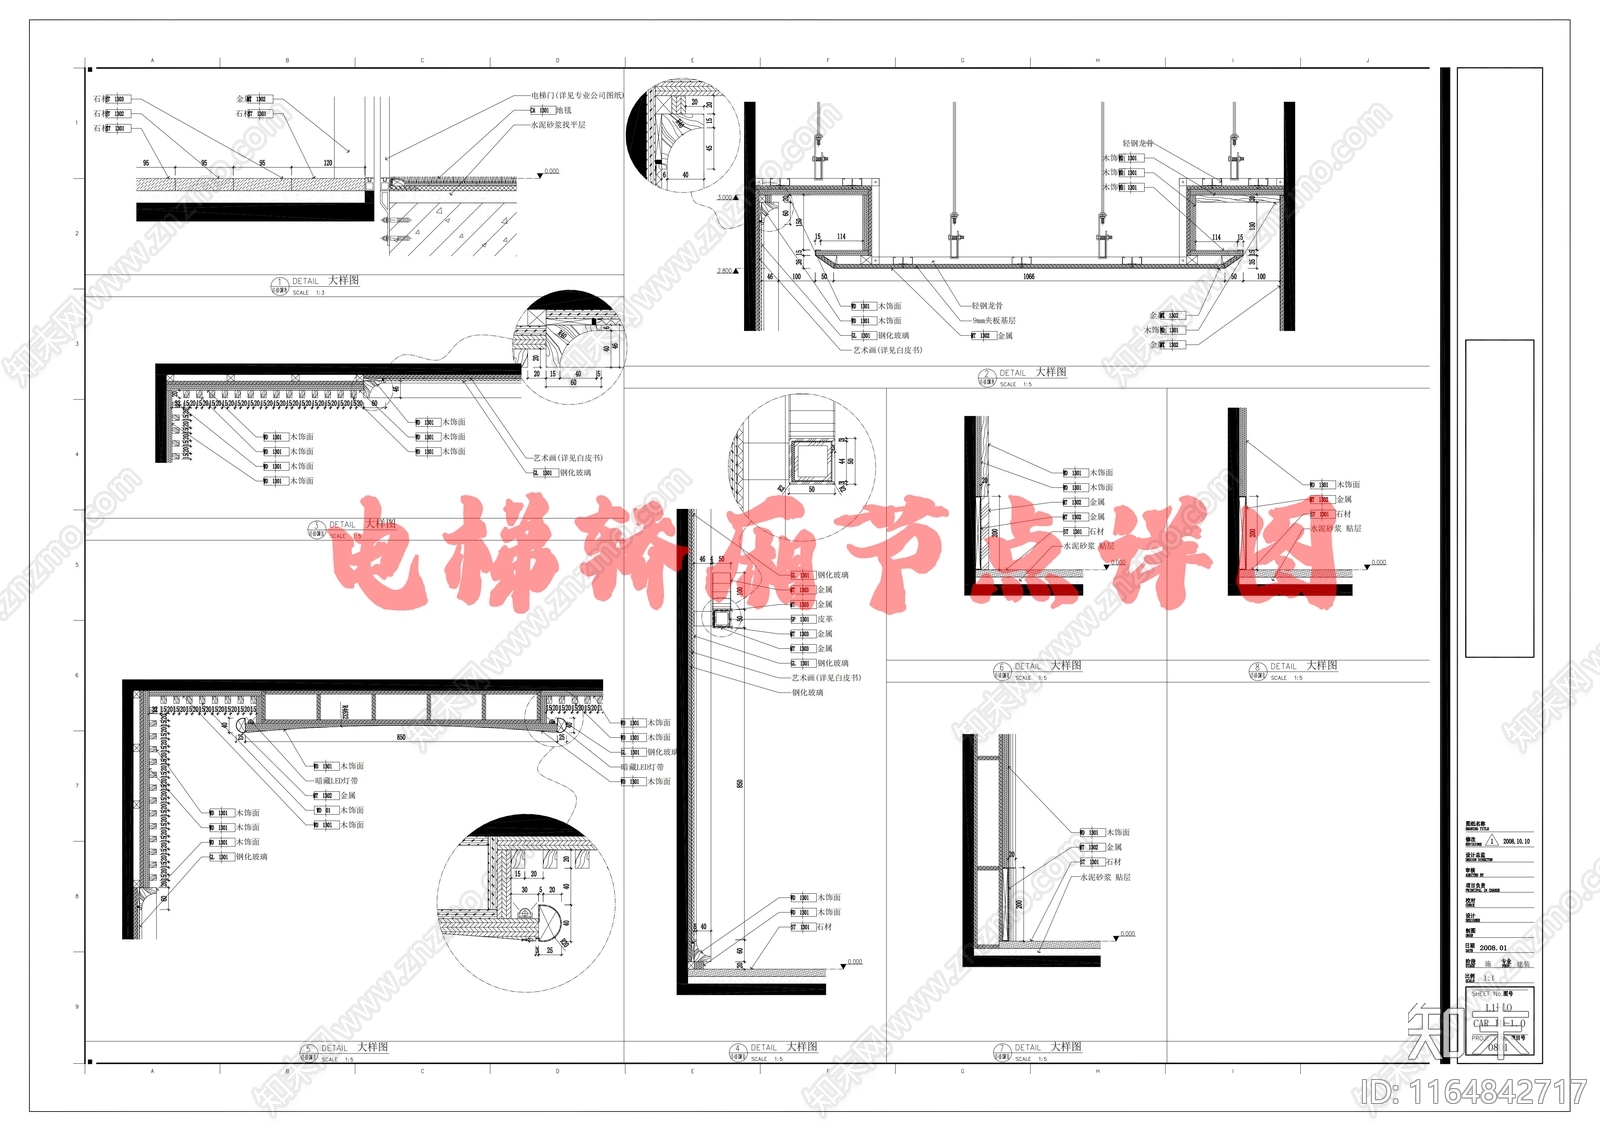 新中式其他室内工艺节点施工图下载【ID:1164842717】